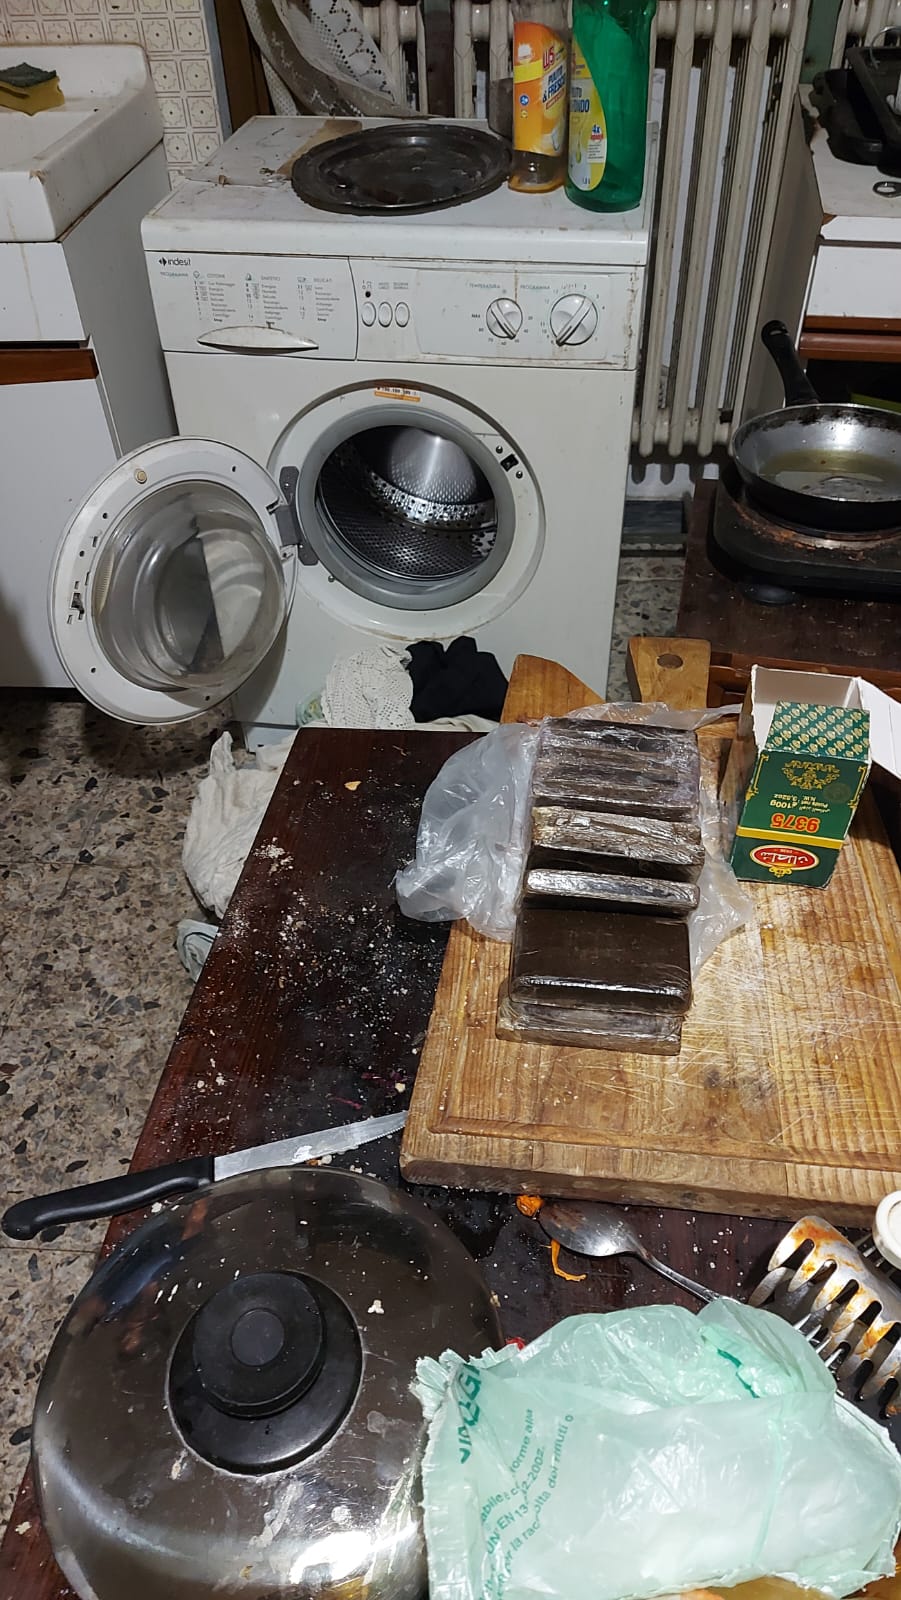 Maxi sequestro di droga dei carabinieri di Saronno: in lavatrice coi panni sporchi 1 chilo di hascish